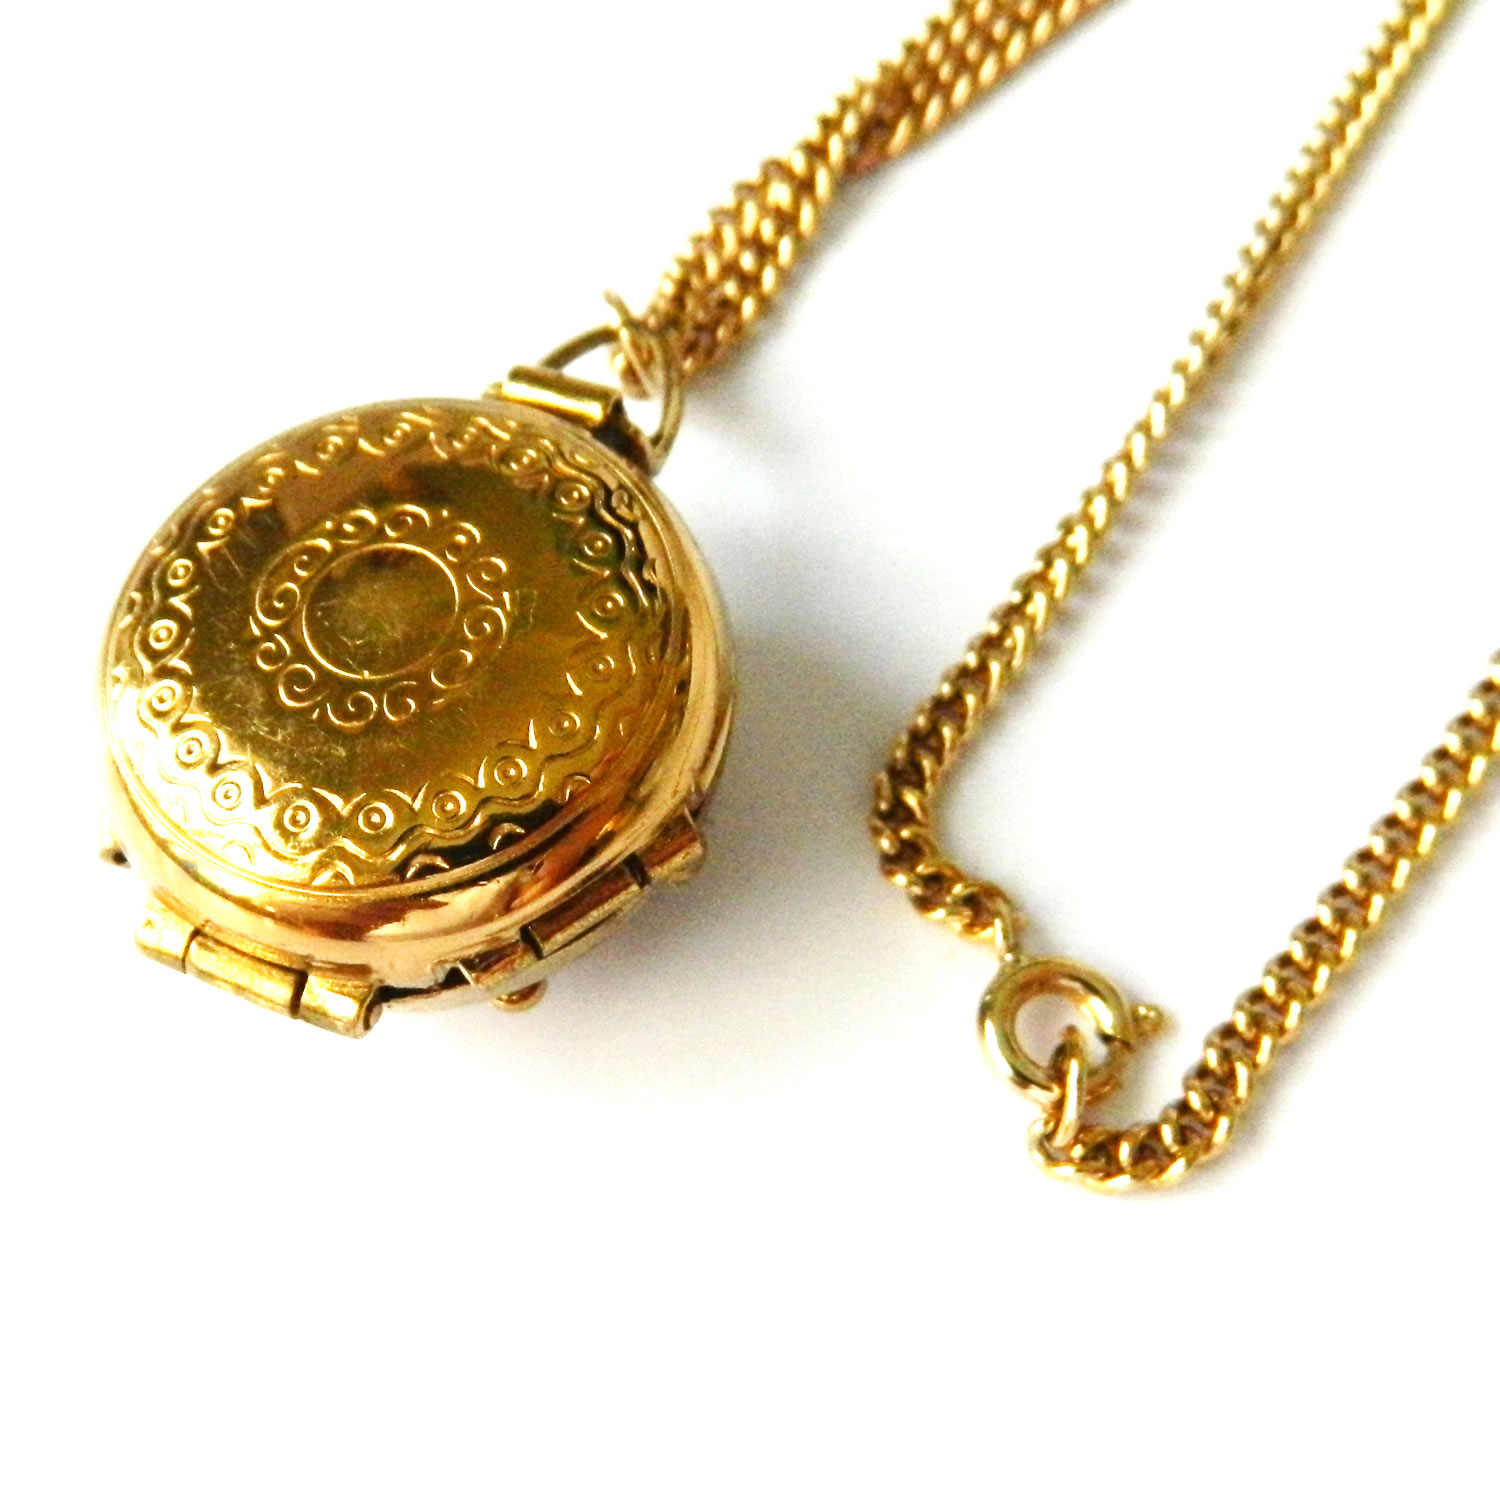 Vintage locket necklace by Coro